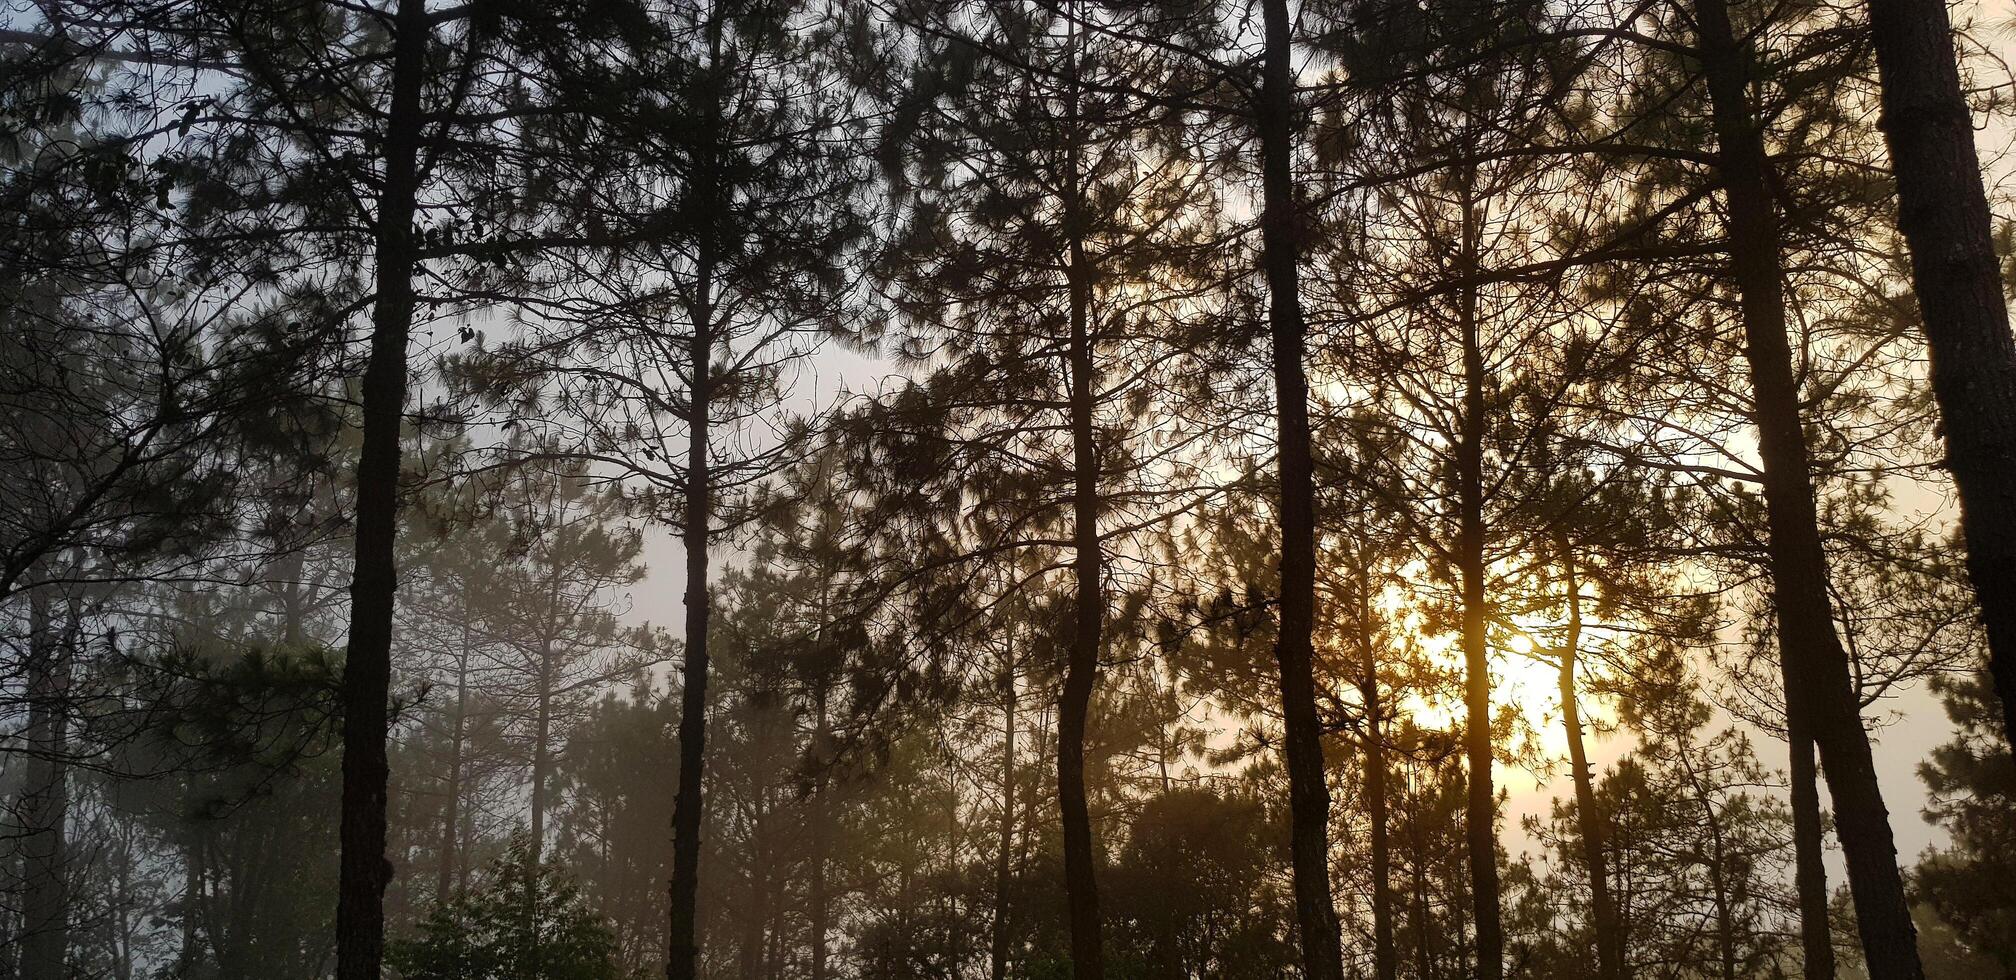 magnifique gros pin et vert feuilles avec Orange lumière du soleil parmi brouillard ou brouillard Contexte dans Matin journée. beauté de nature, plante croissance, Naturel fond d'écran et silhouette de arbre concept photo